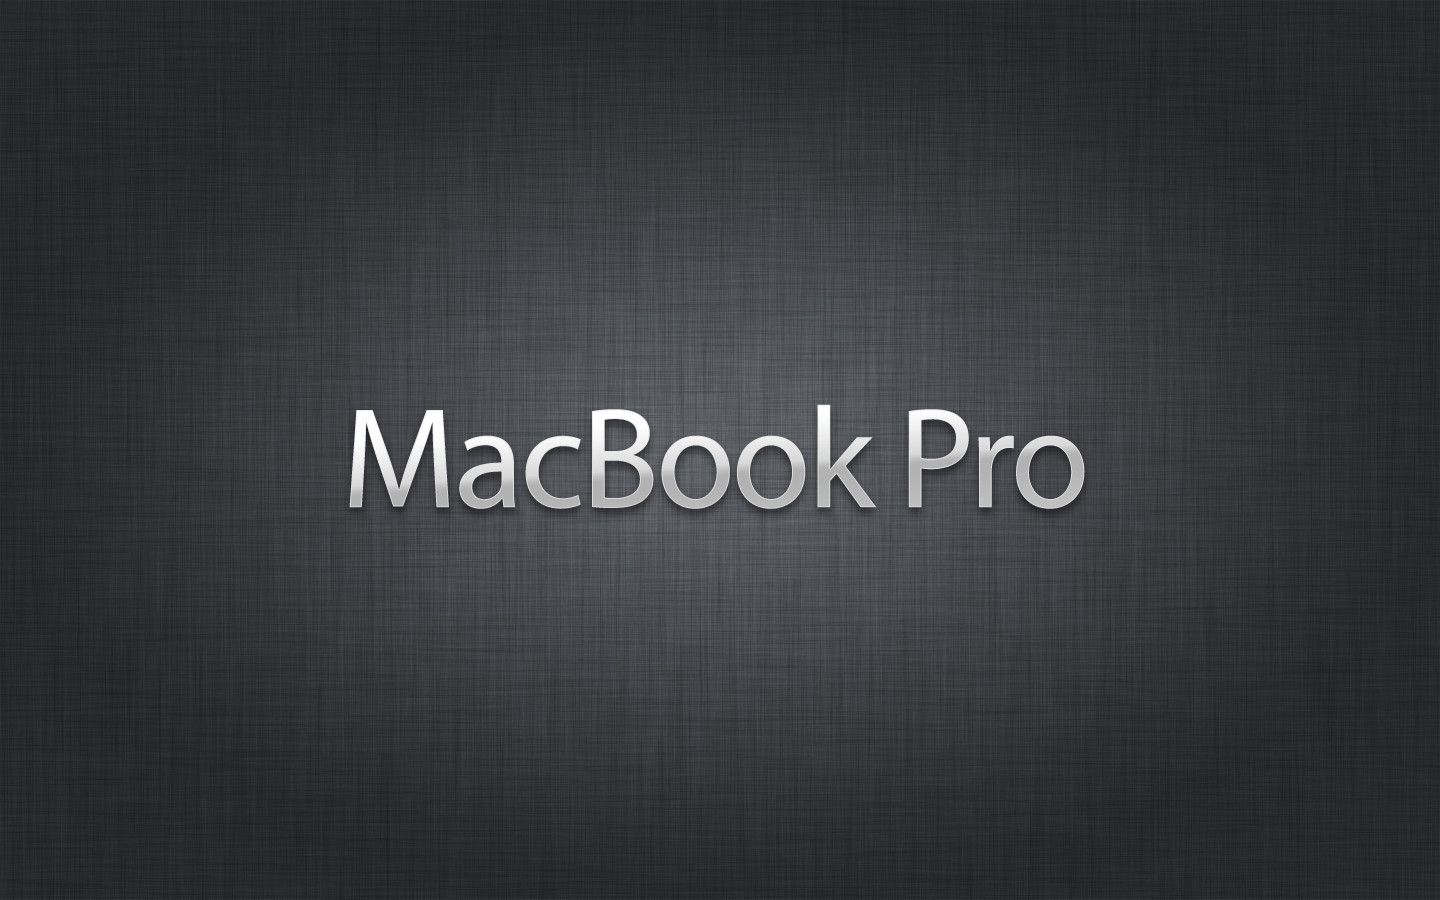 Macbook pro wallpaper